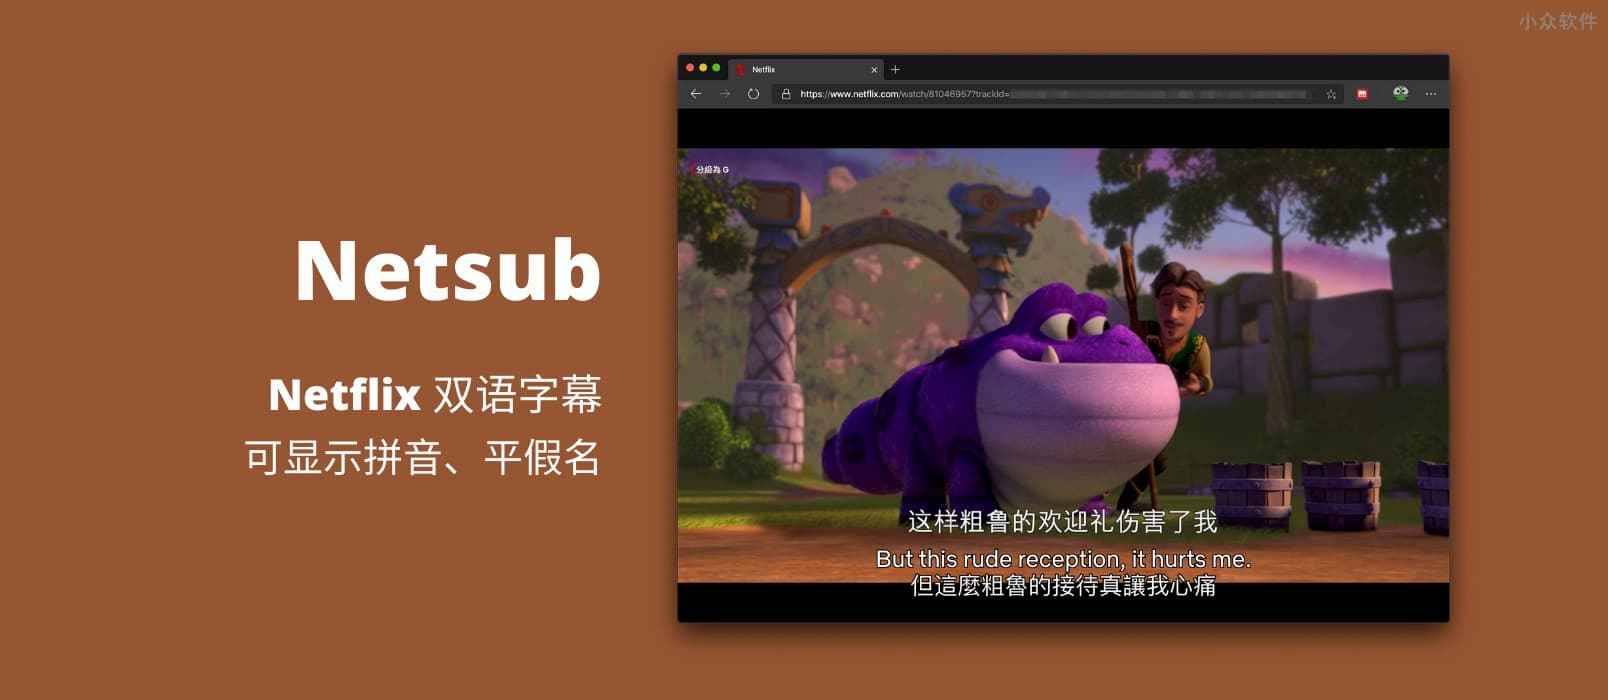 Netsub – 为 Netflix 显示双语字幕，并可显示拼音、平假名用来学习中文、日语[Chrome/Edge]